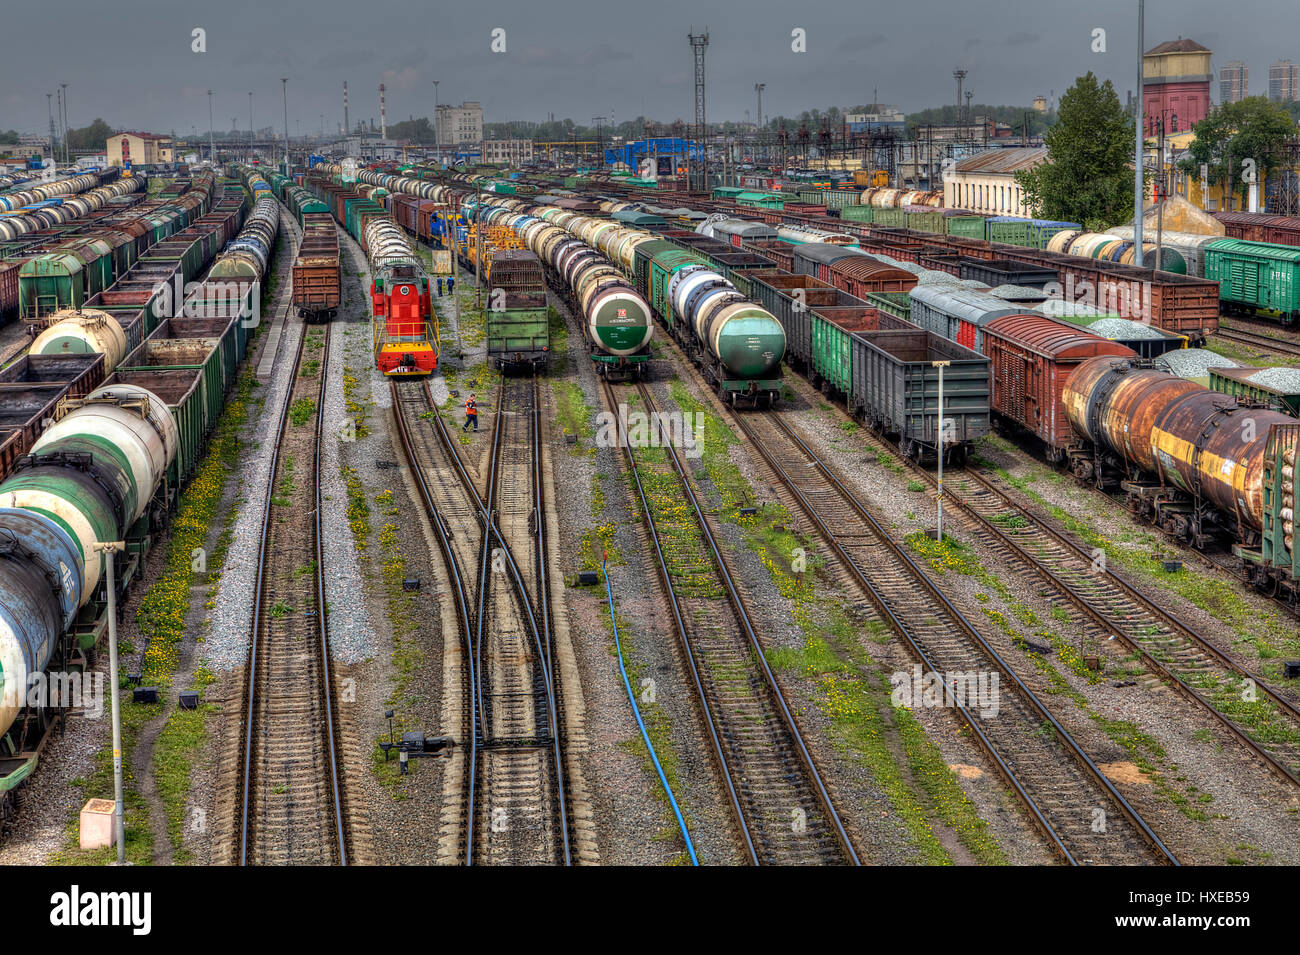 Saint-pétersbourg, Russie - le 22 mai 2015 : gare de marchandises du chemin de fer, de nombreux wagons de marchandises sont alignés dans la cour, classification énorme sont entreposés en attendant departur Banque D'Images